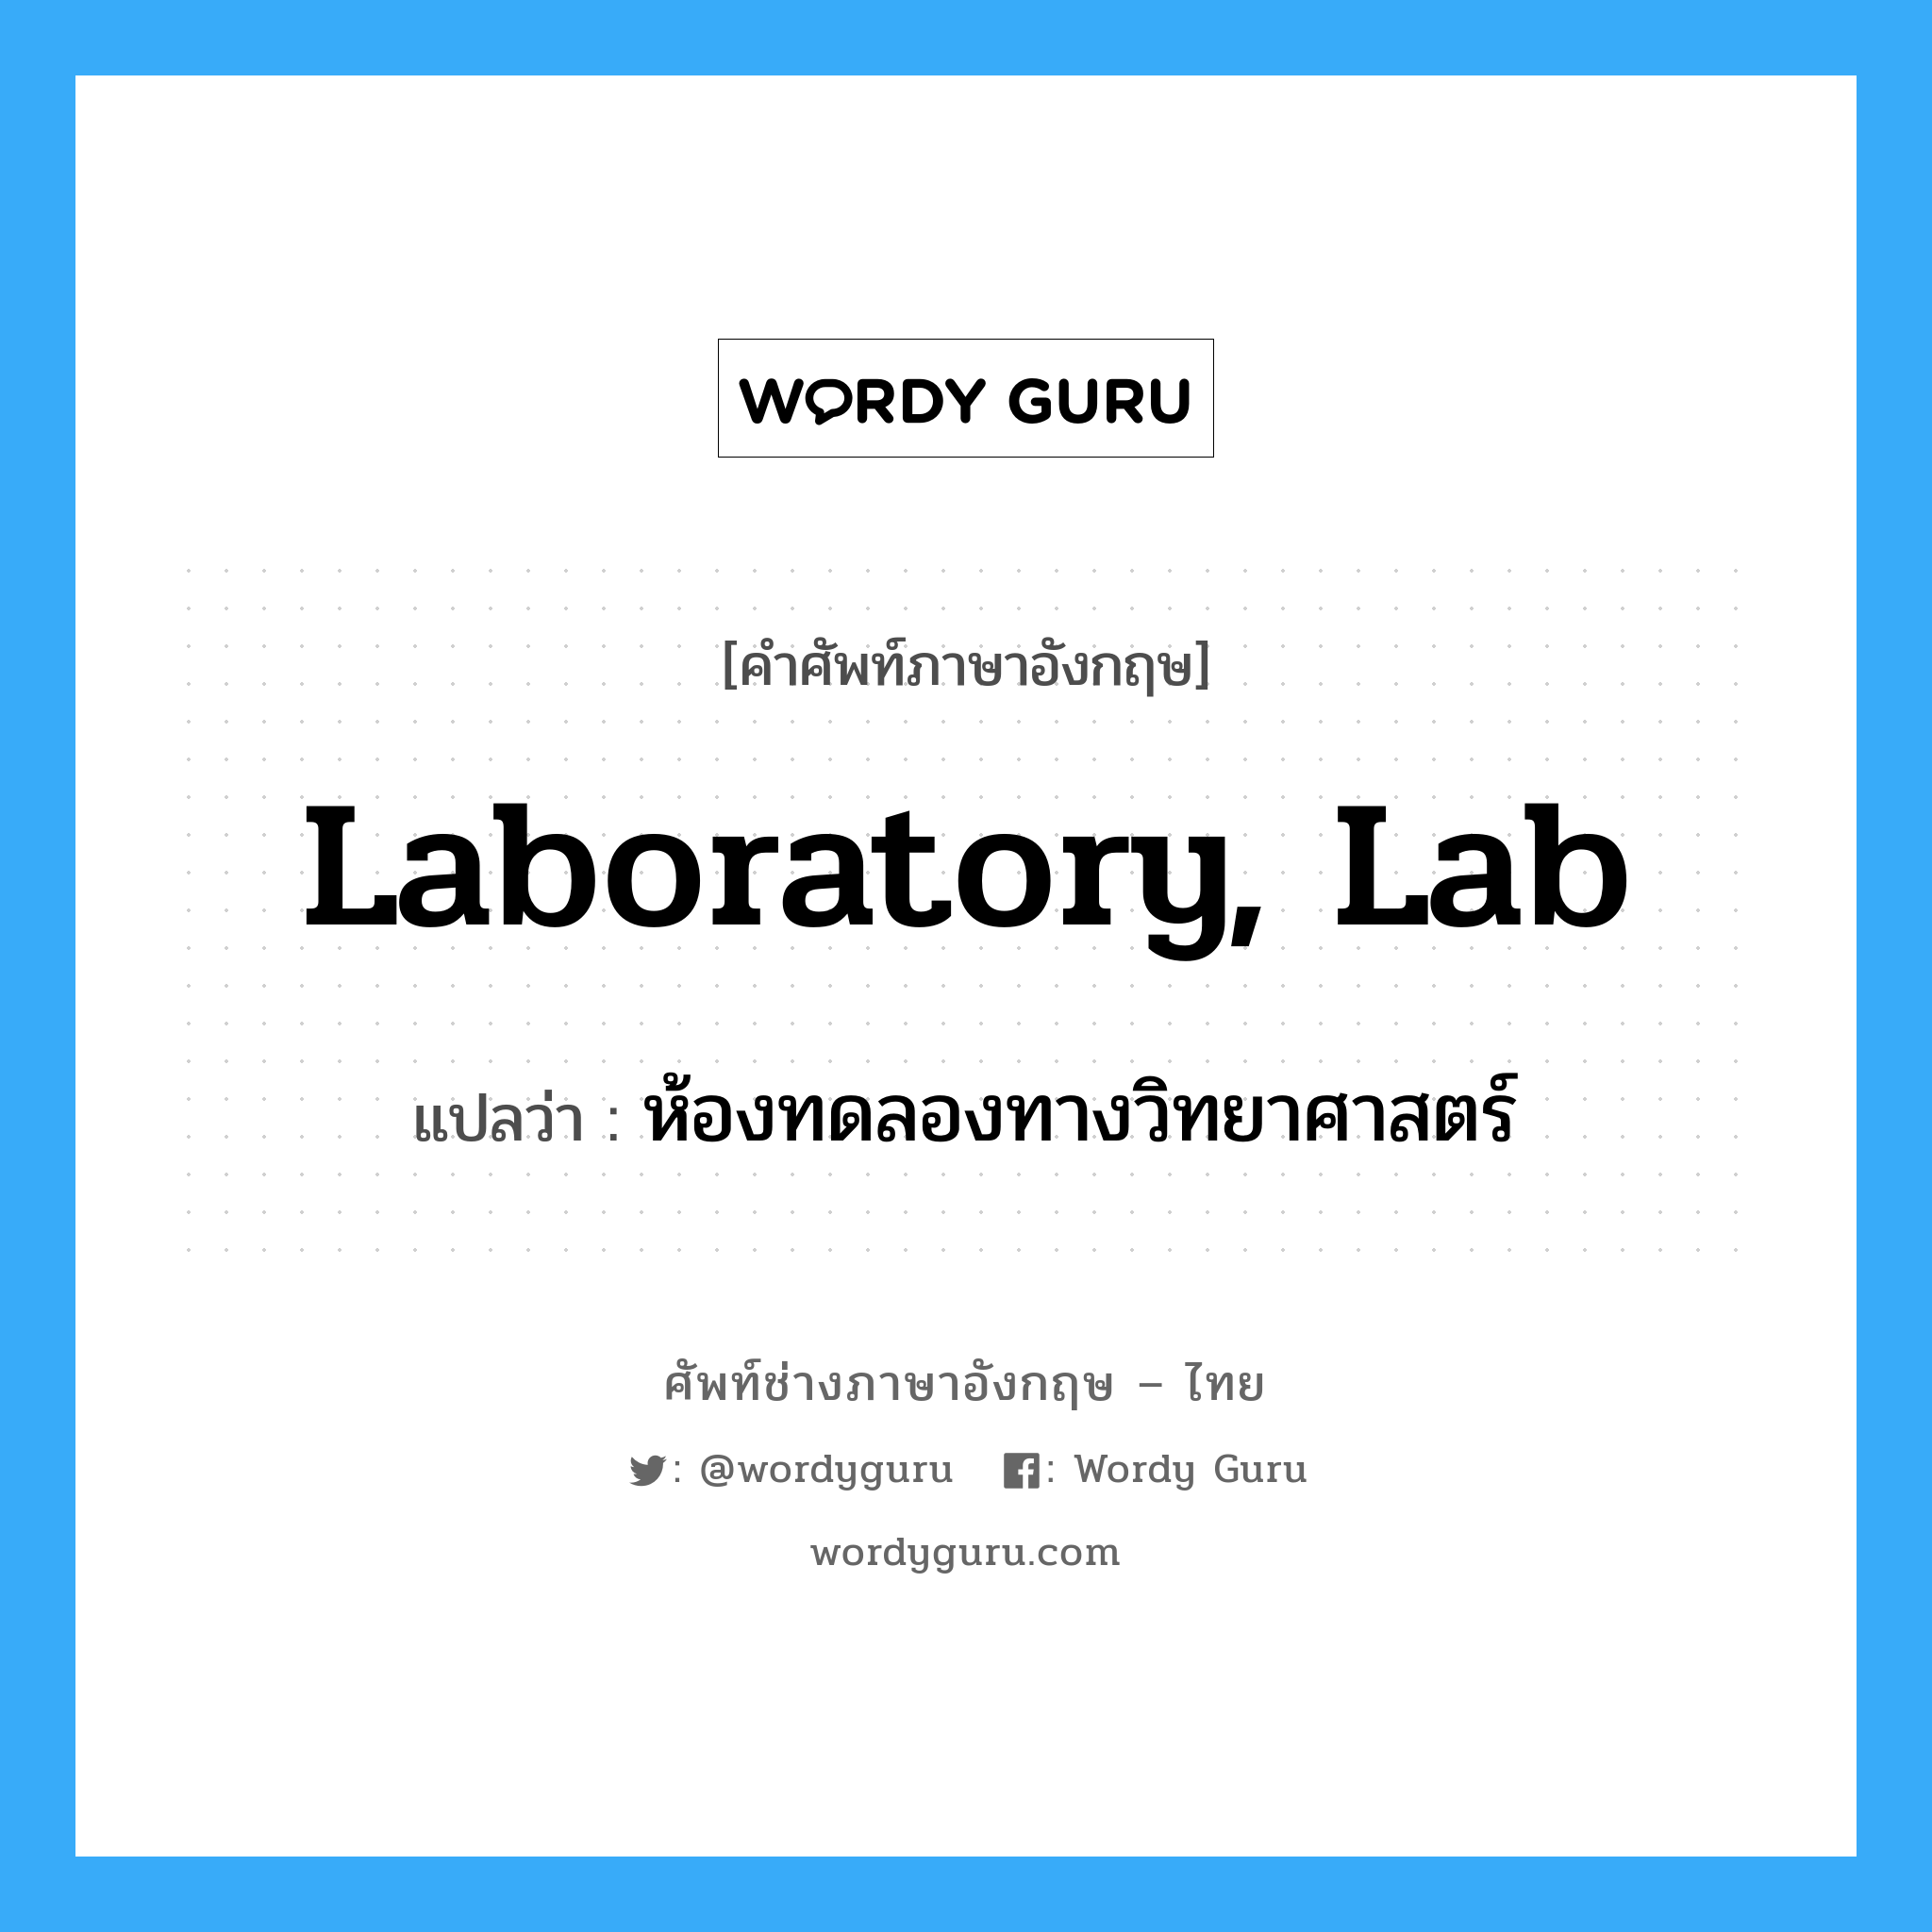 laboratory, lab แปลว่า?, คำศัพท์ช่างภาษาอังกฤษ - ไทย laboratory, lab คำศัพท์ภาษาอังกฤษ laboratory, lab แปลว่า ห้องทดลองทางวิทยาศาสตร์